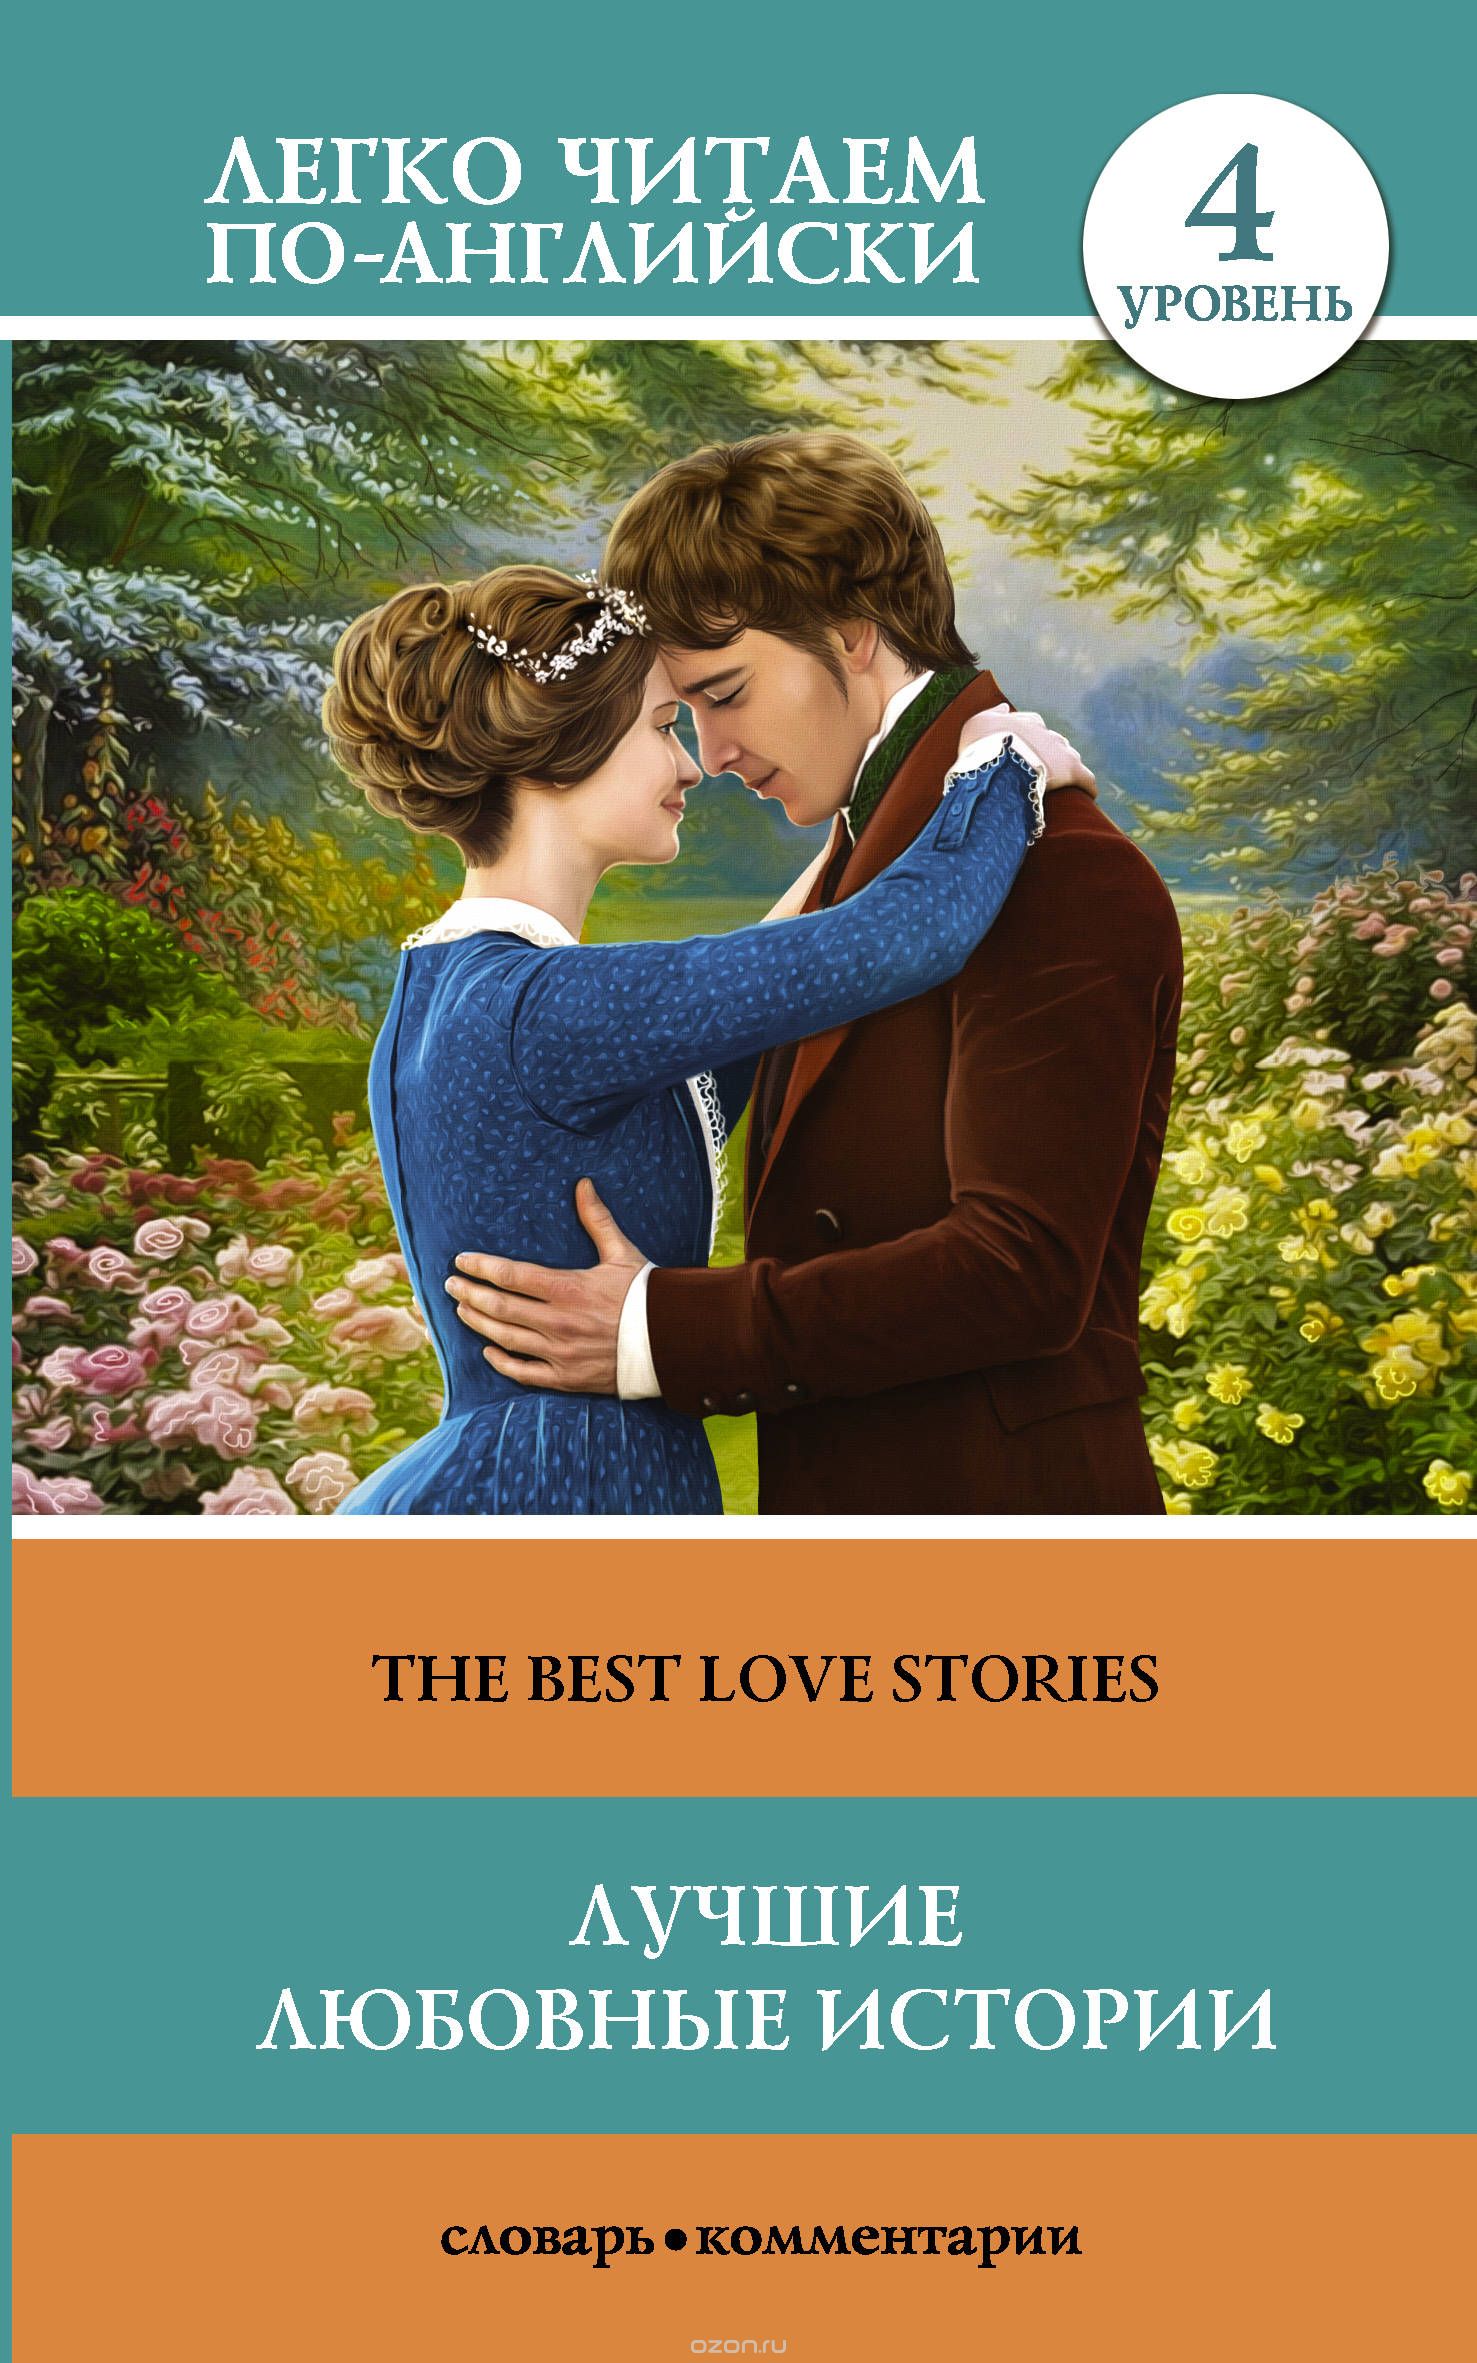 Скачать книгу "Лучшие любовные истории. Уровень 4"